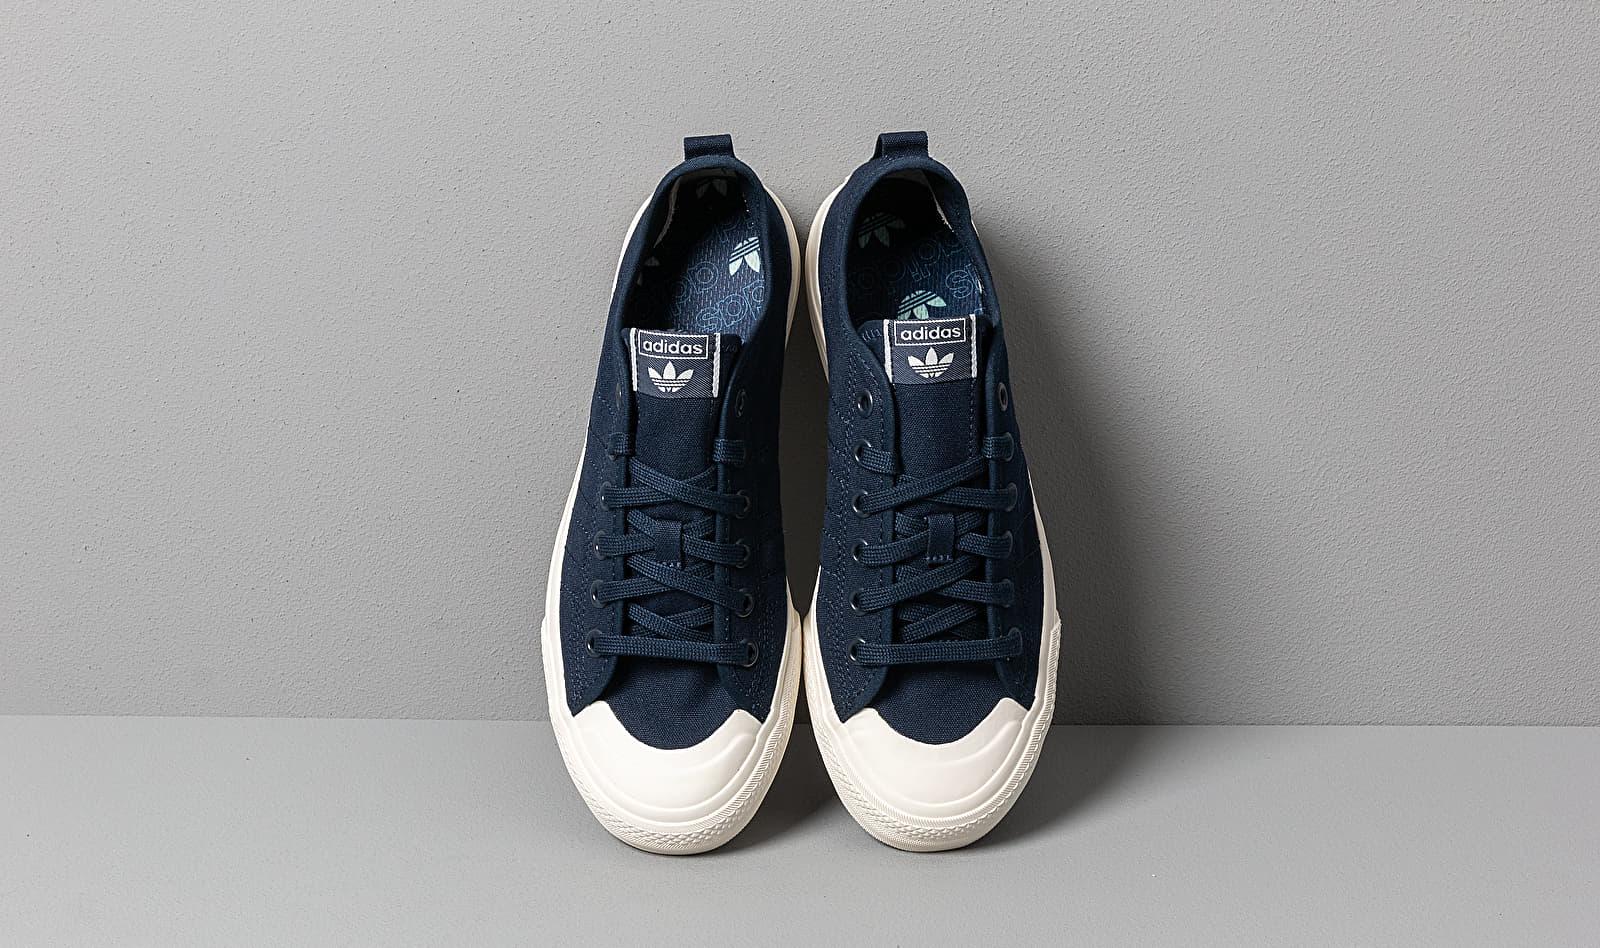 adidas Nizza Rf Shoes in Blue | Lyst